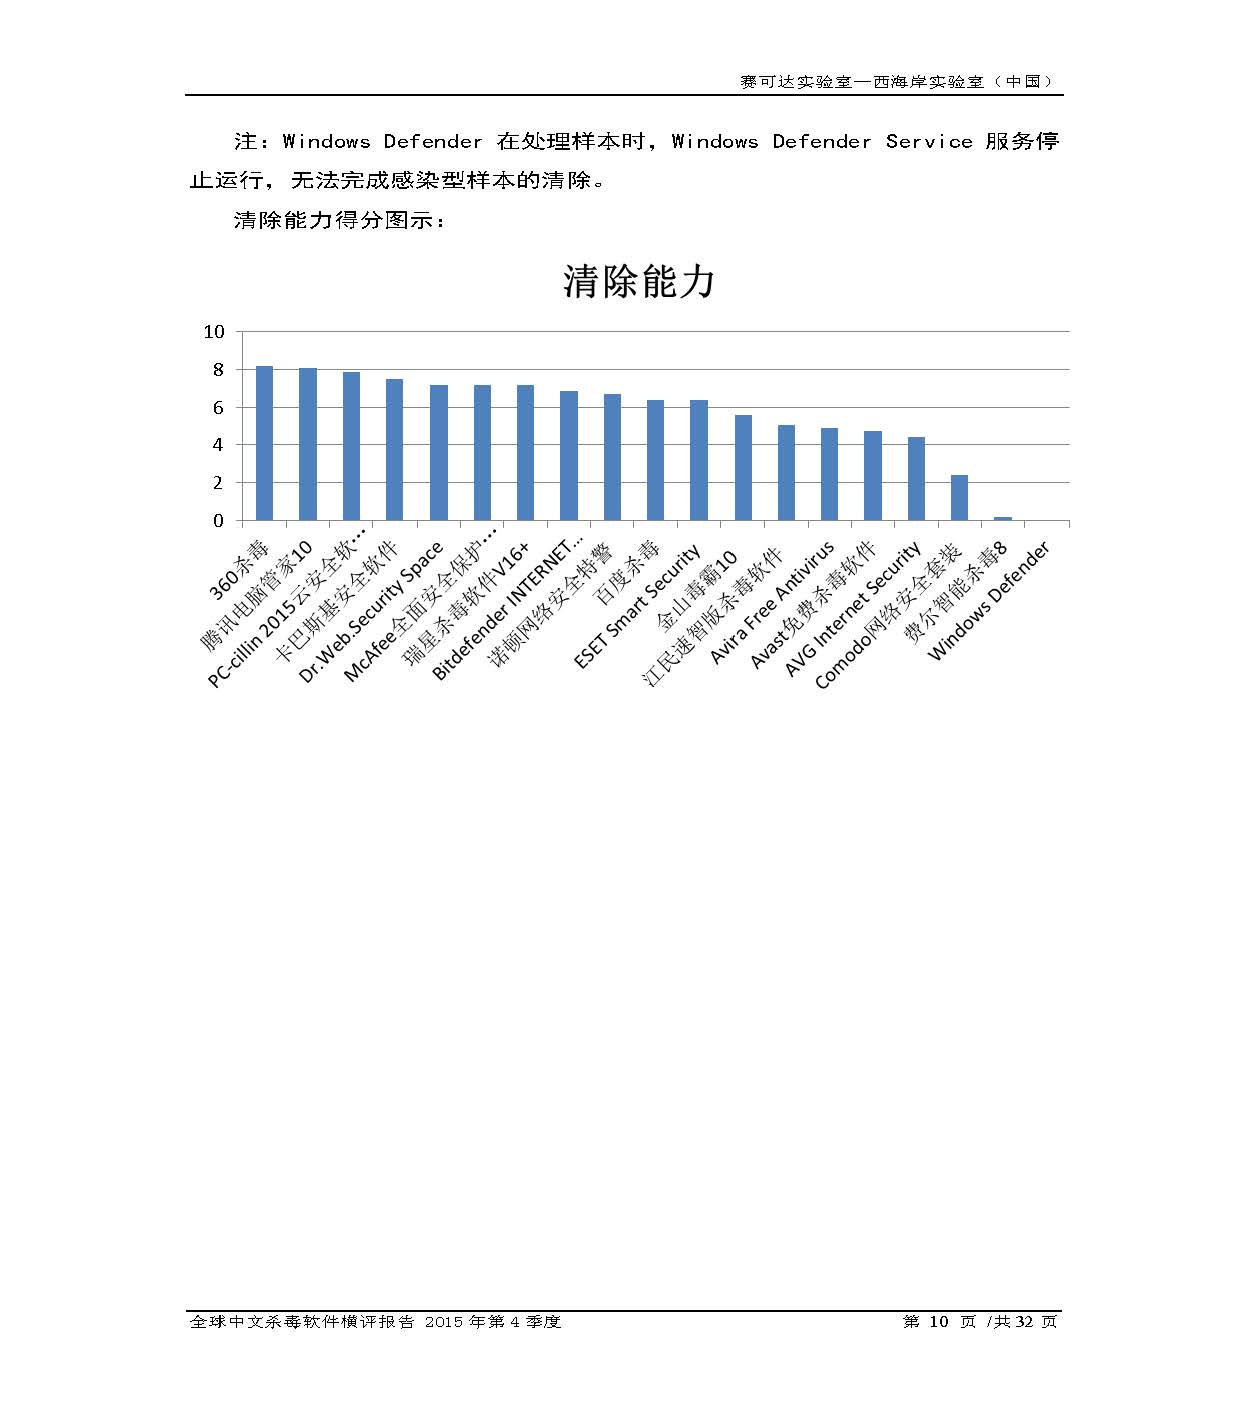 中文PC杀毒软件横评测试报告- Windows 8.1【中文版】.pdf (_Page_12.jpg